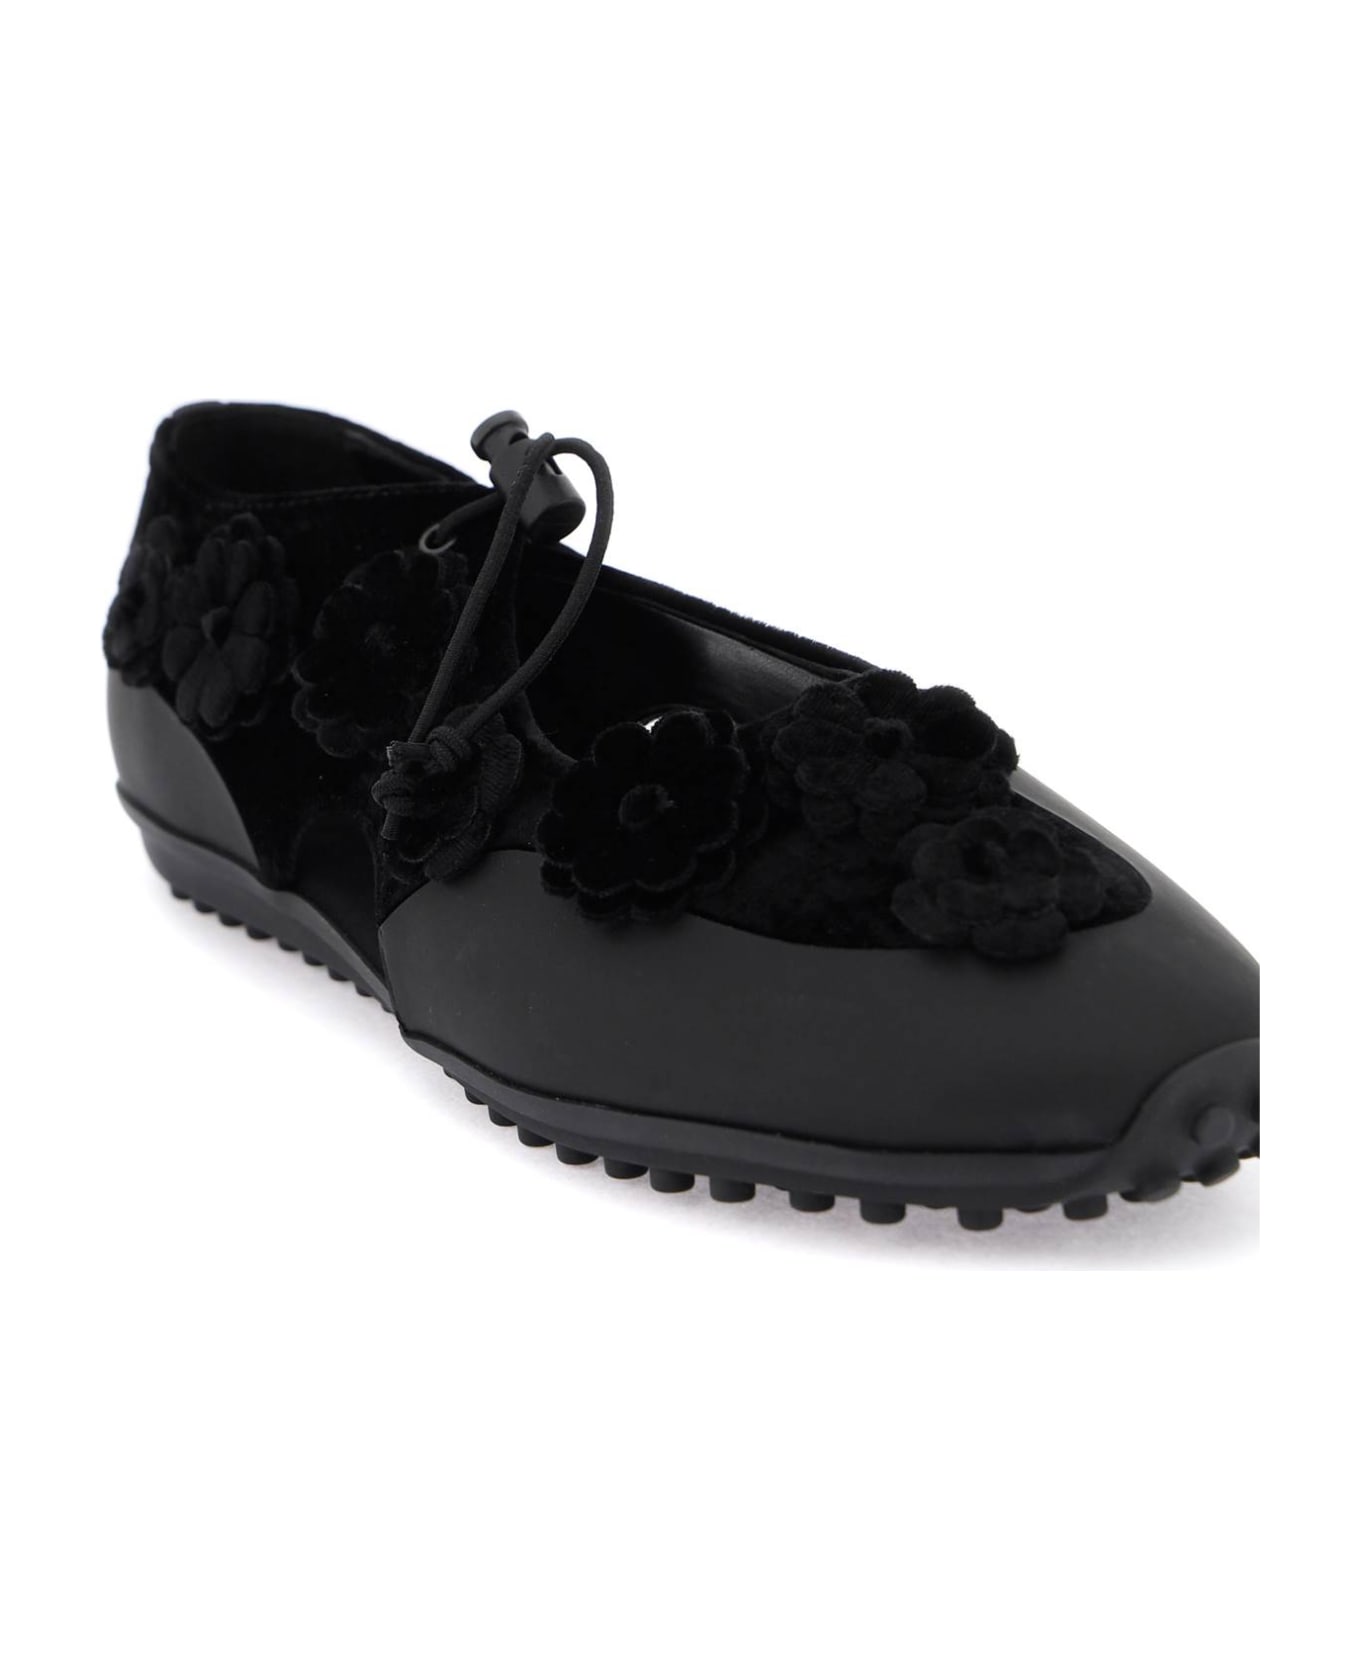 Cecilie Bahnsen Shay Open Flat Ballet Shoes - BLACK (Black)